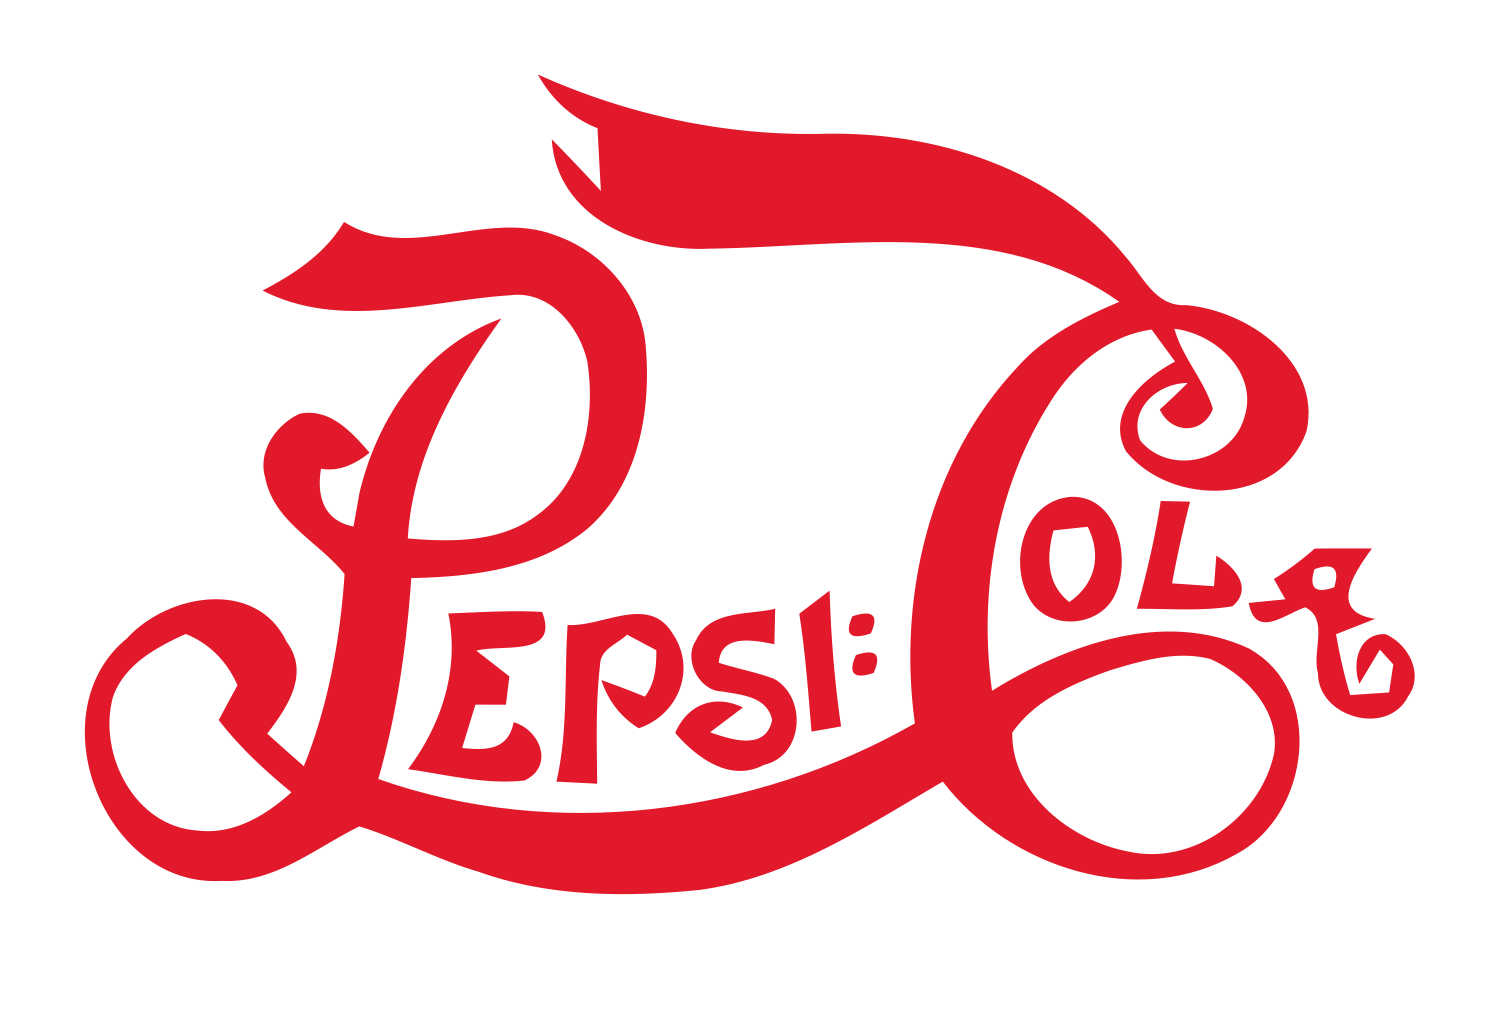 Pepsi PNG Photos